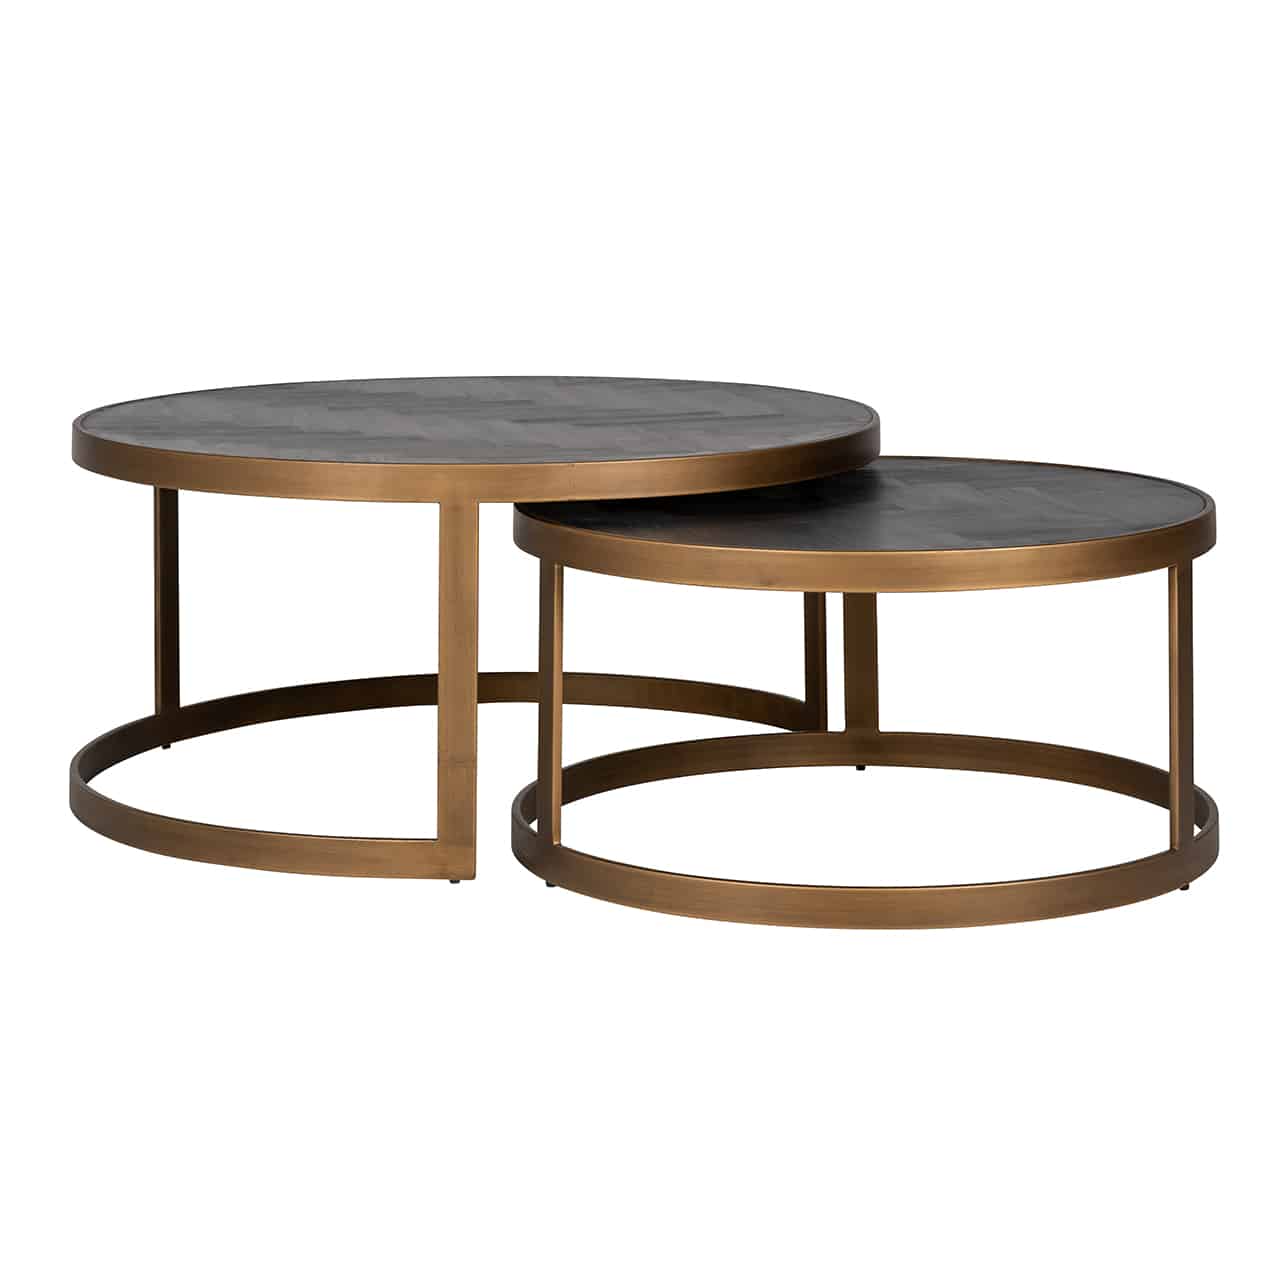 Couchtisch 2er Set; zwei verschieden hohe runde Tische, die zum Teil ineinandergeschoben sind; das Gestell ist jeweils aus breiten, goldene Metallstreben mit einer schwarzen, matt glänzenden  Tischplatte. im Fischgrätmuster.